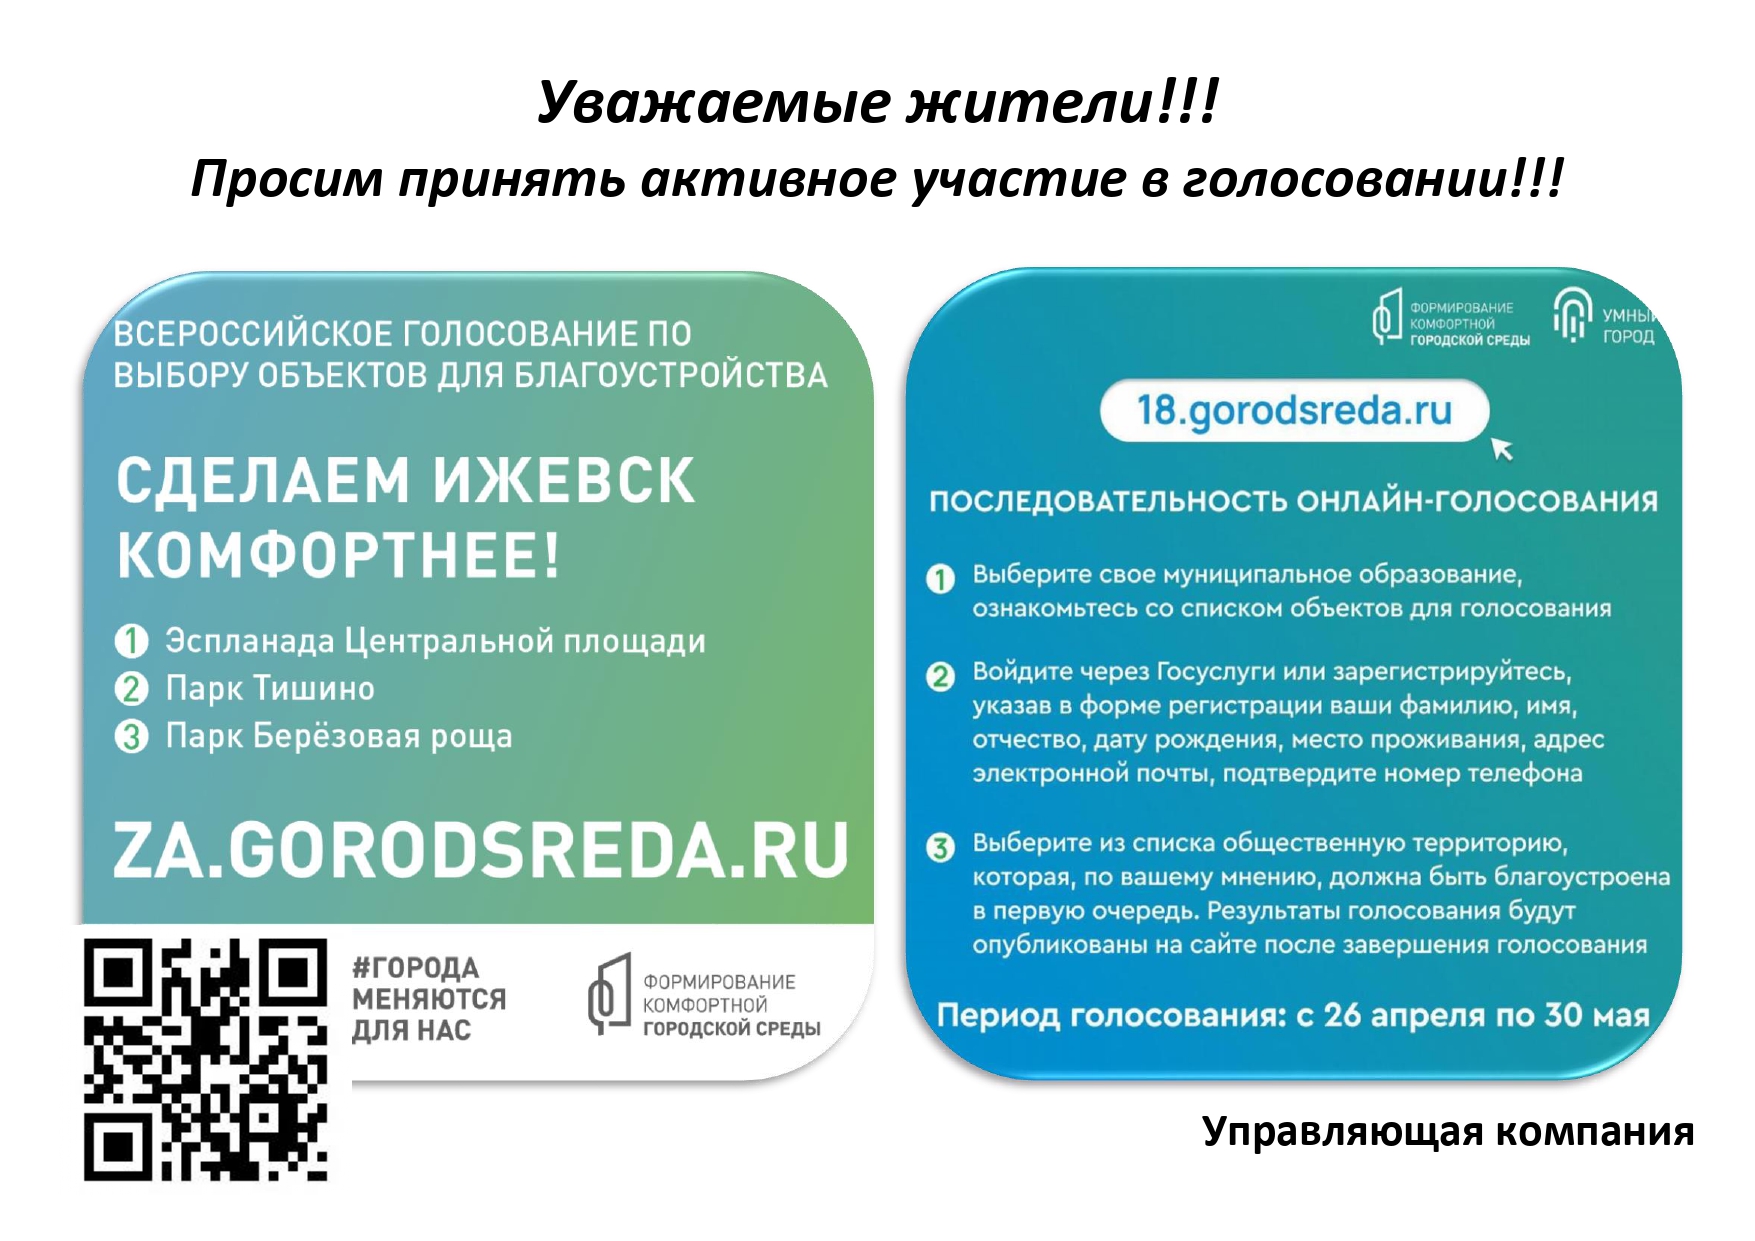 Примите участие в голосовании. 66 Городсреда ру проголосовать. 64городсреда.ру.